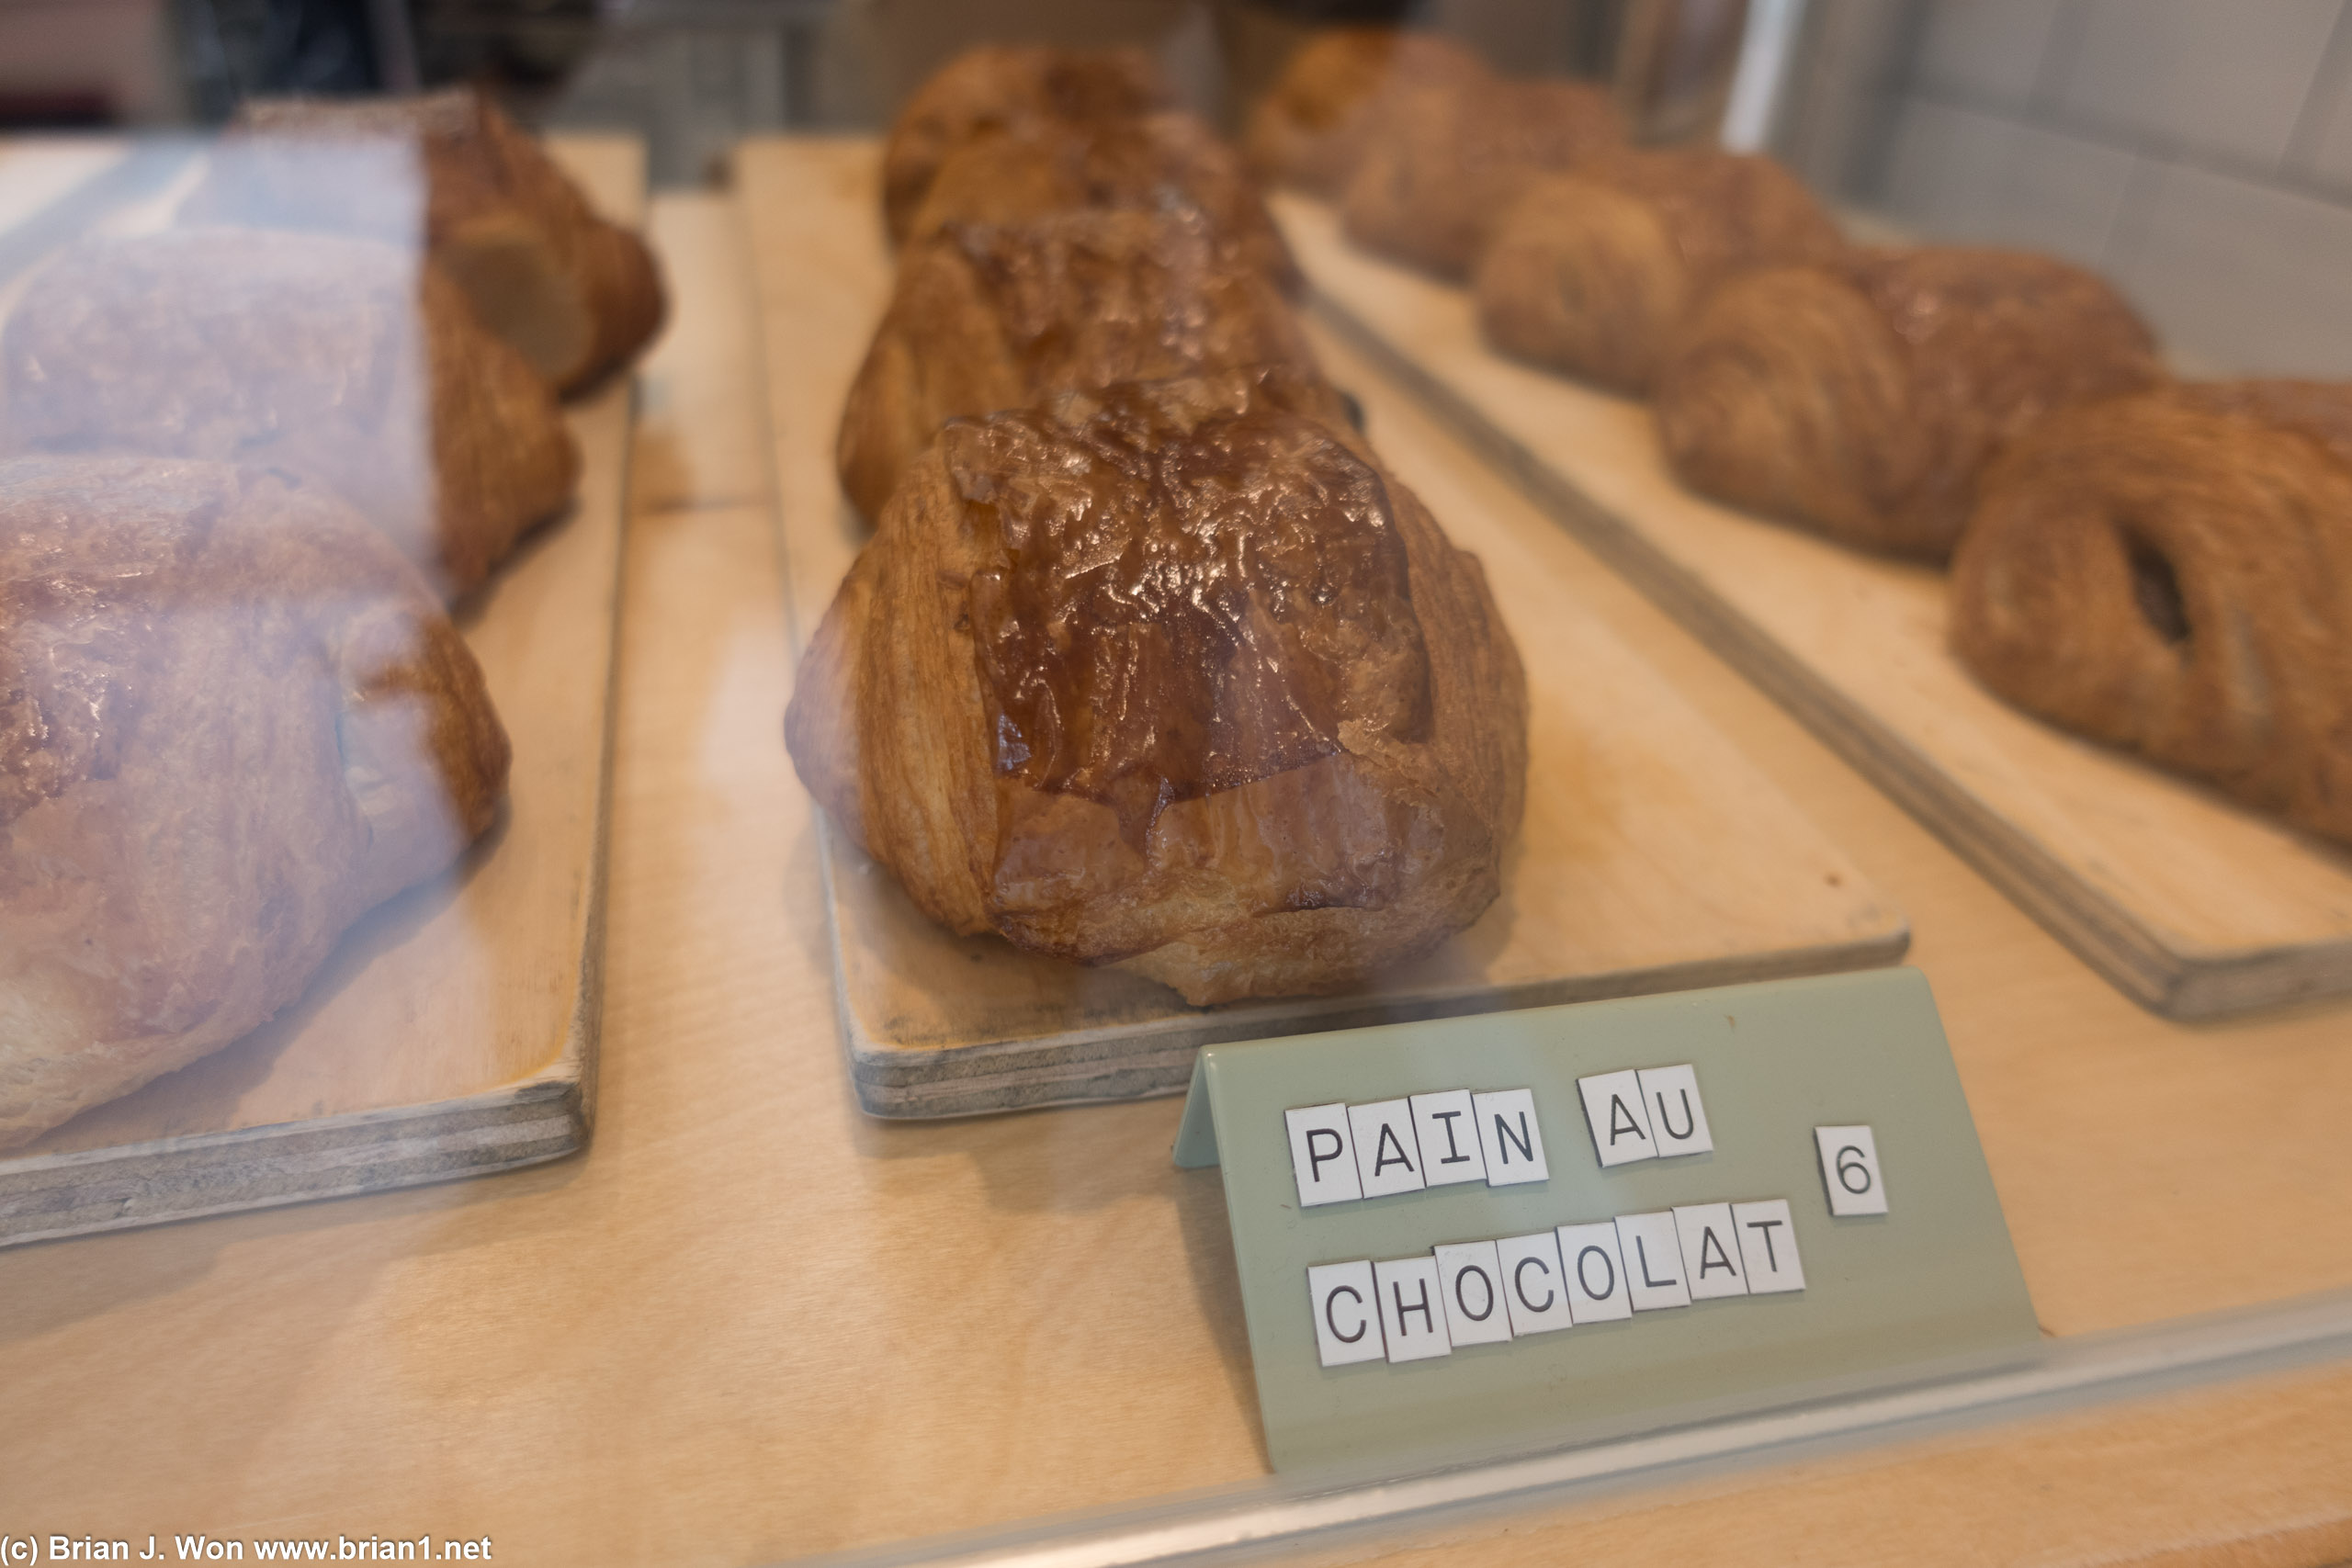 Pain au chocolat at Petitgrain Boulangerie.